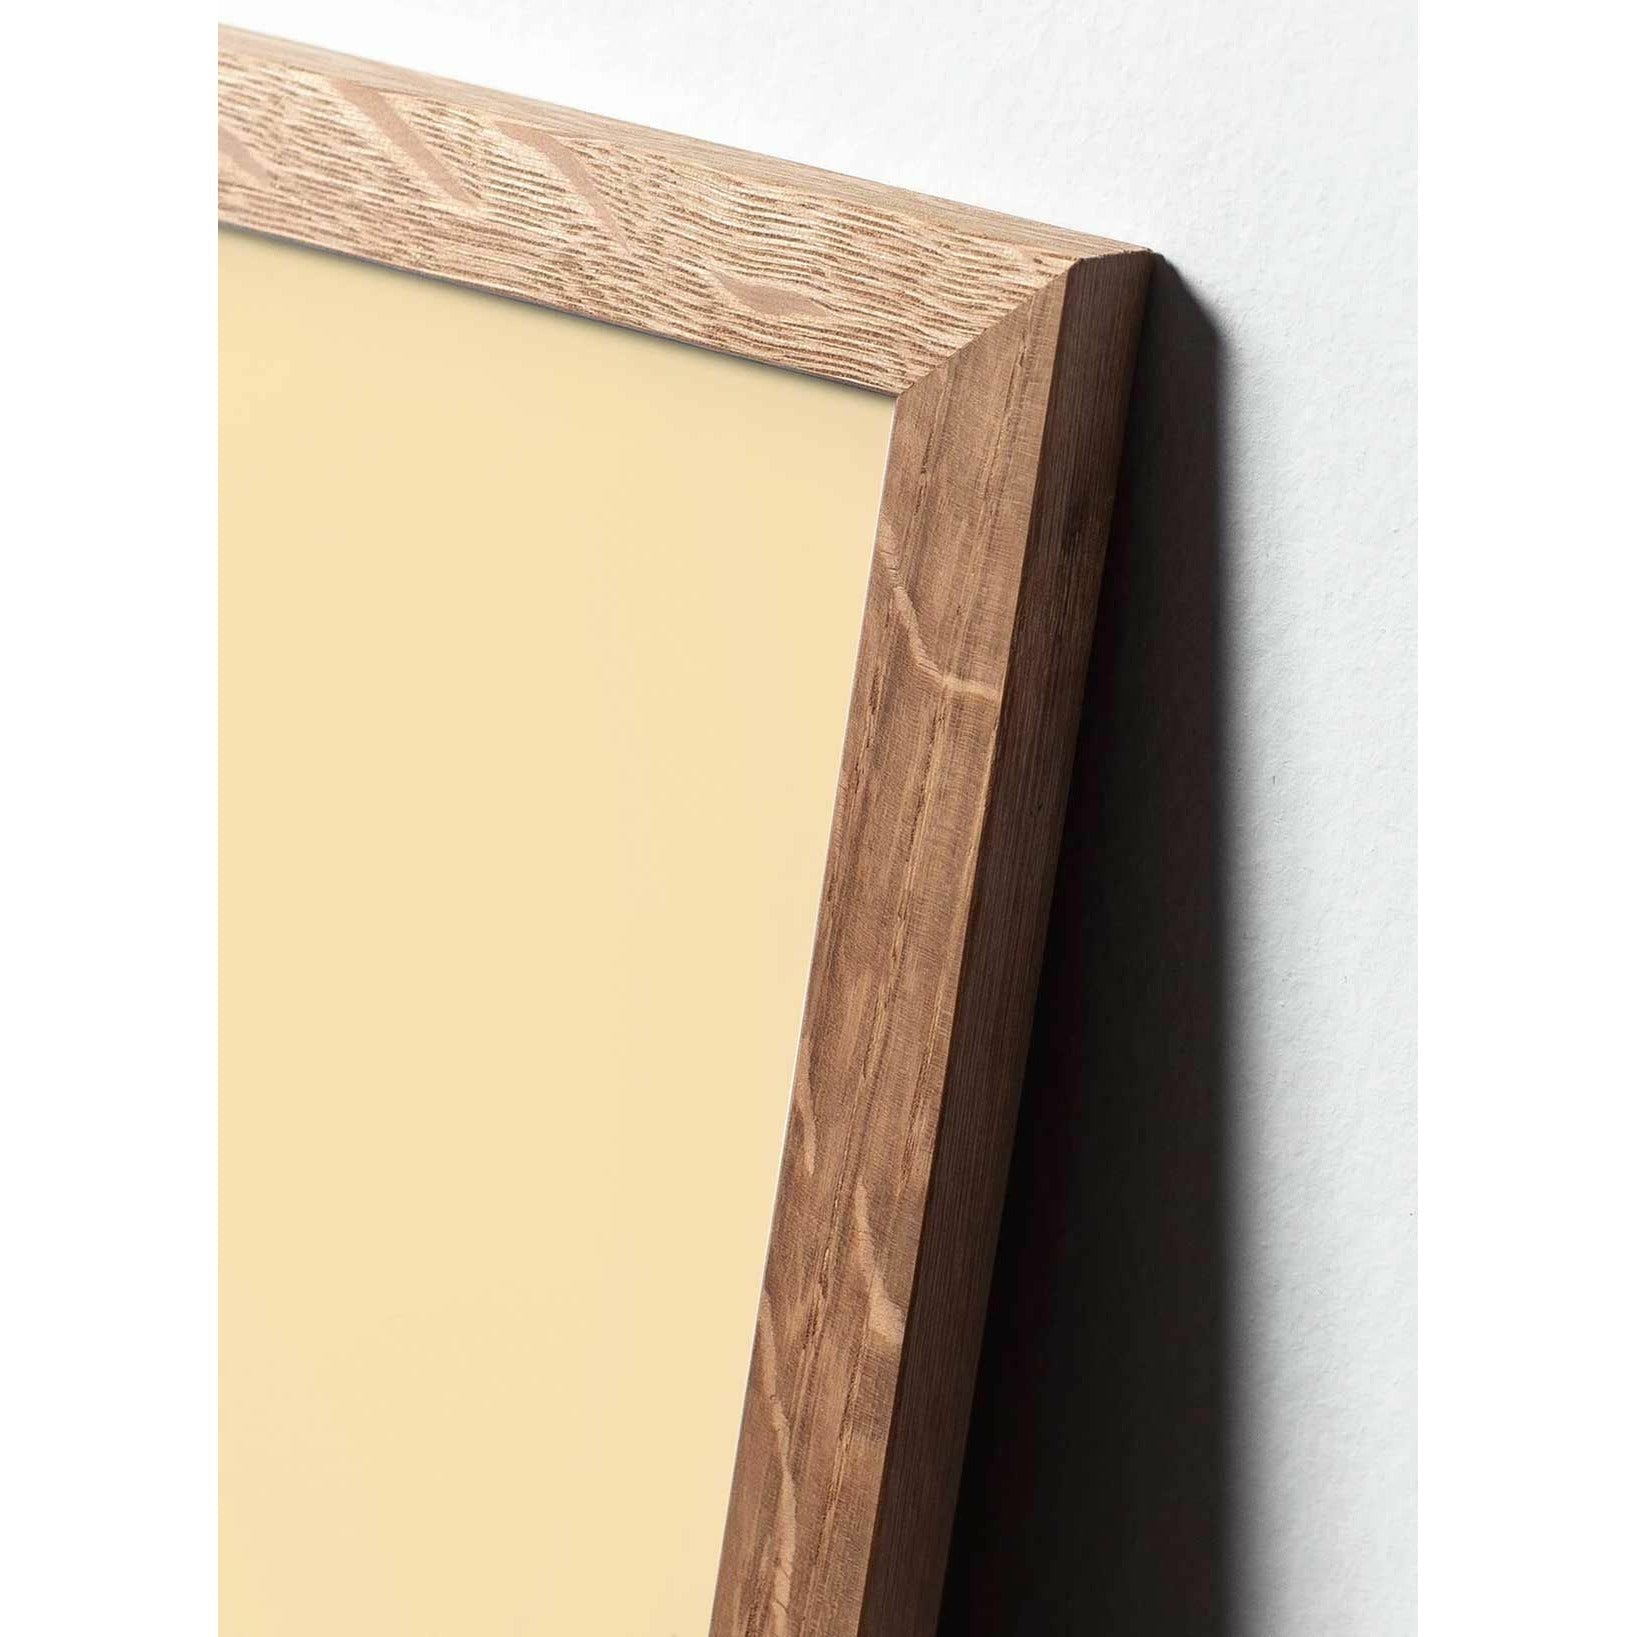 brainchild Pine Cone Classic Poster, frame gemaakt van licht hout 30x40 cm, donkerblauwe achtergrond